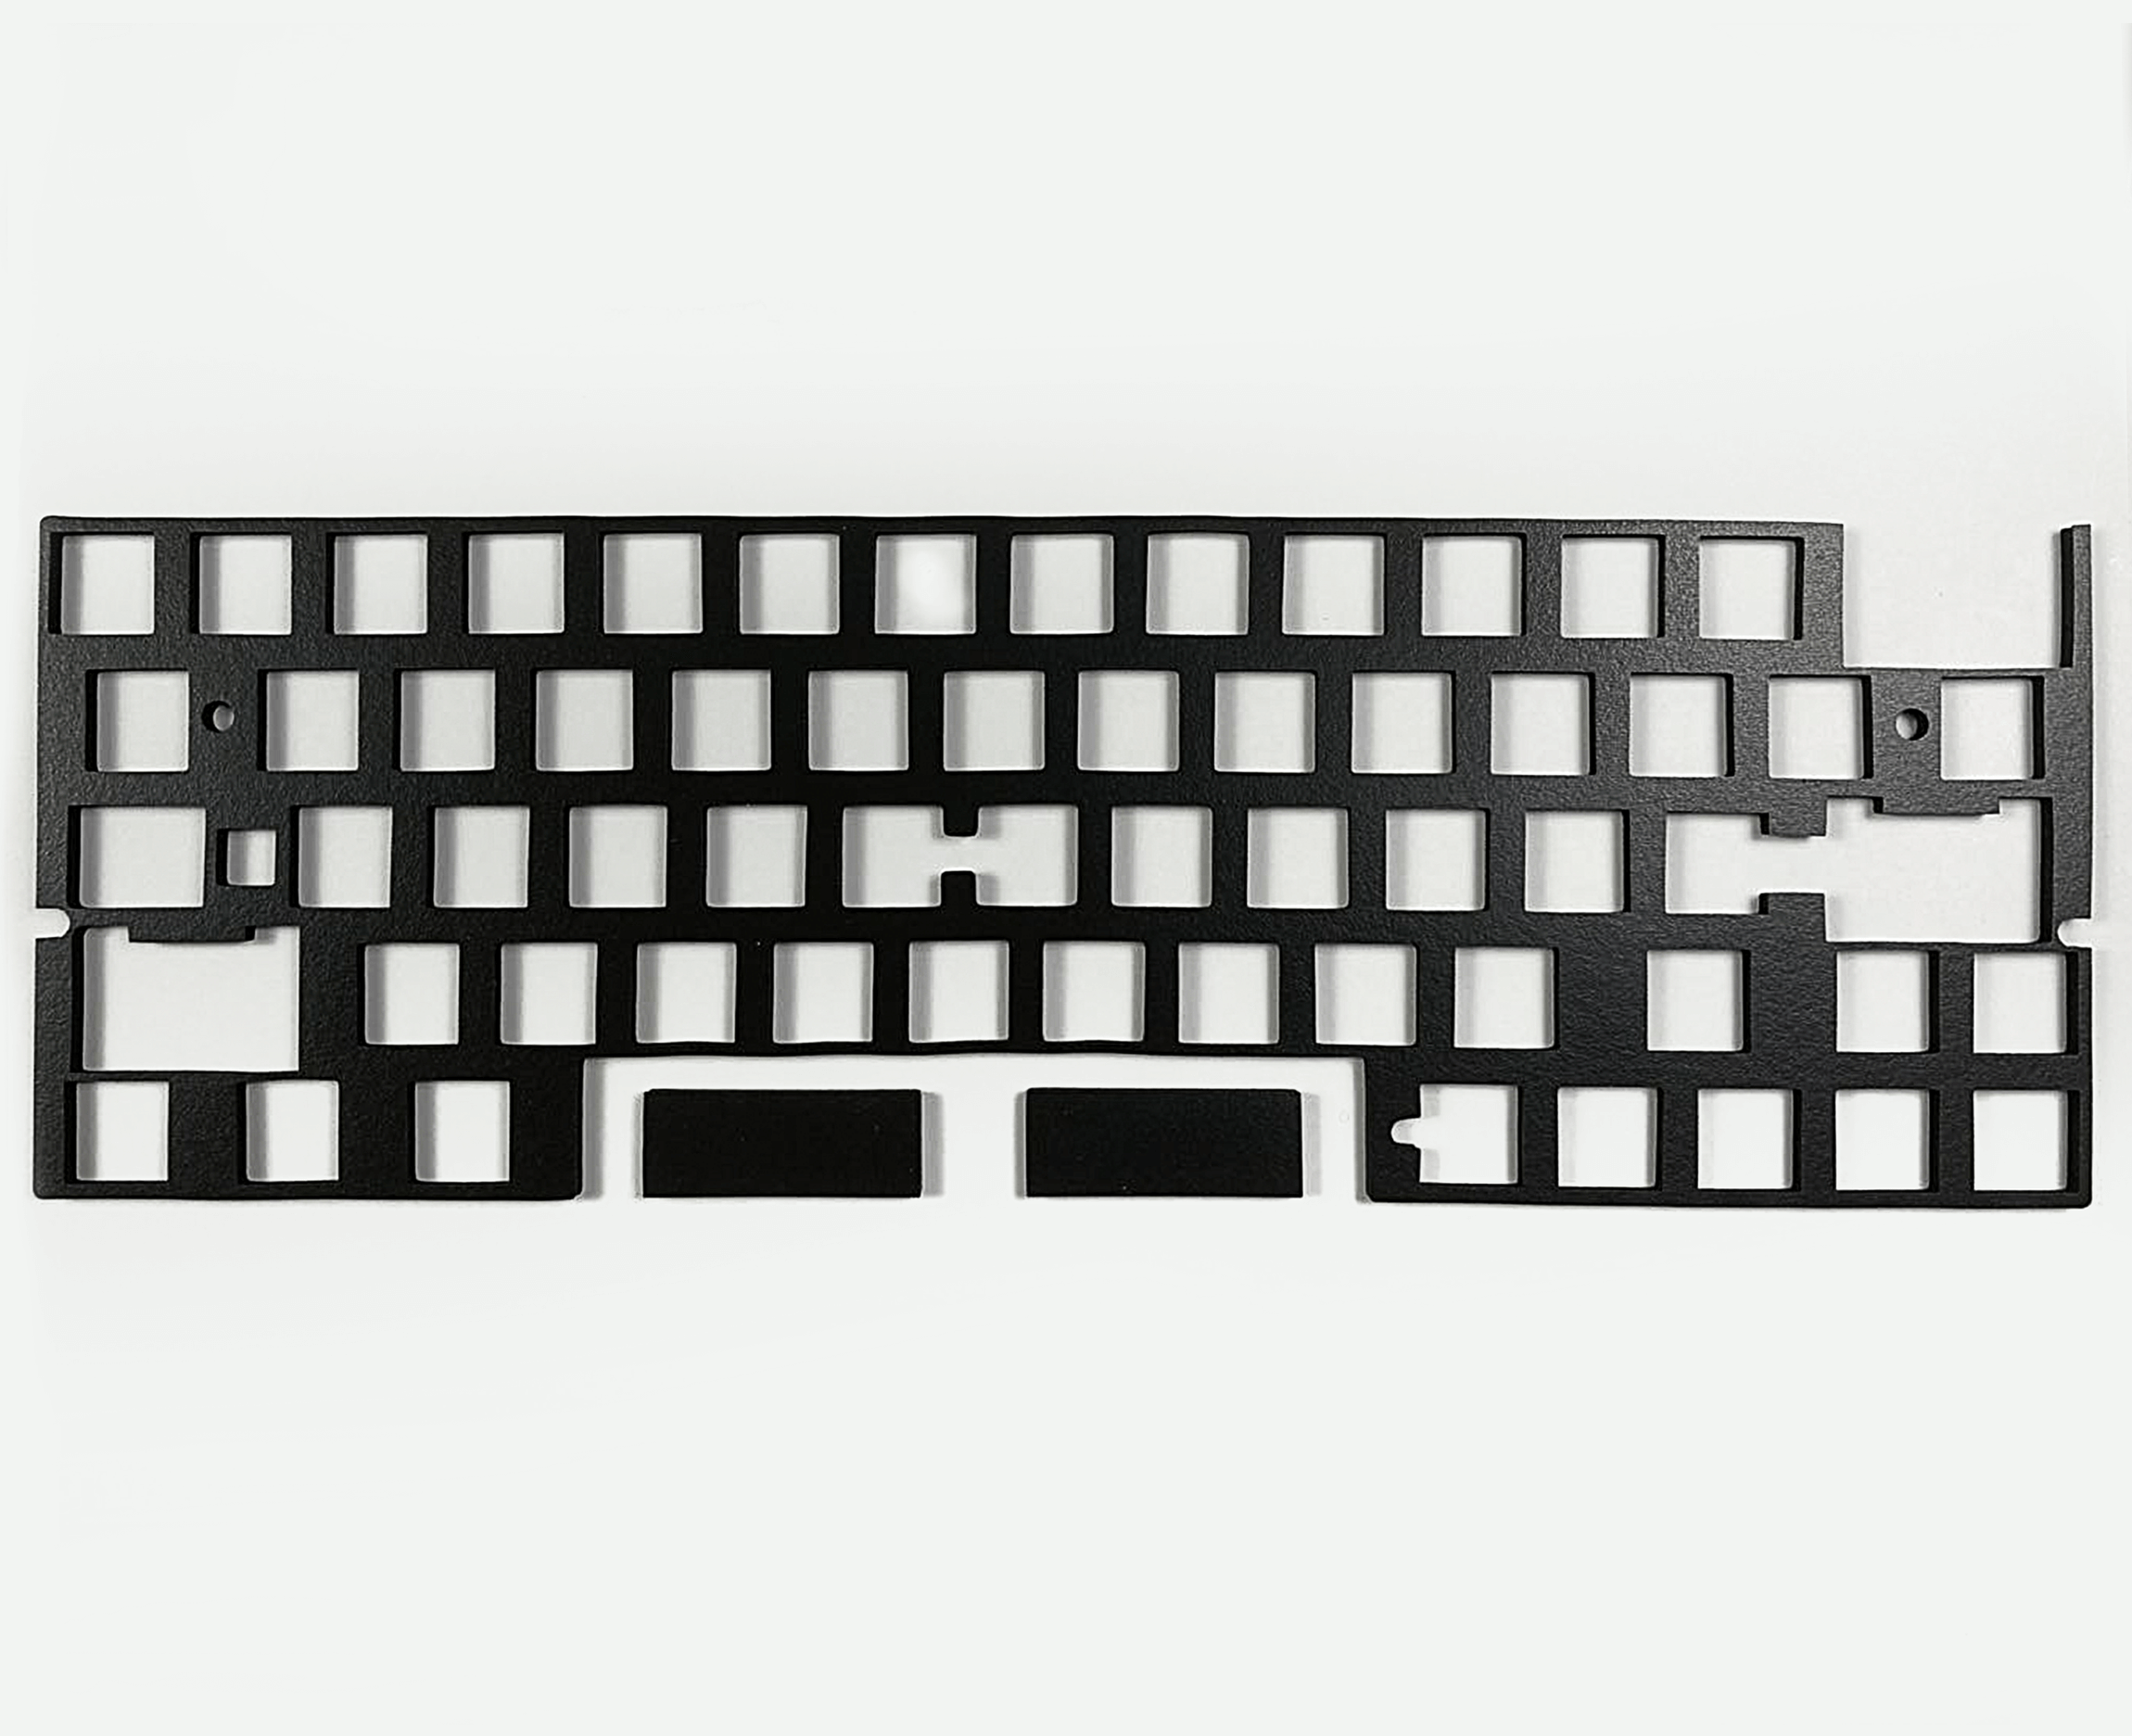 Keyboard Foam